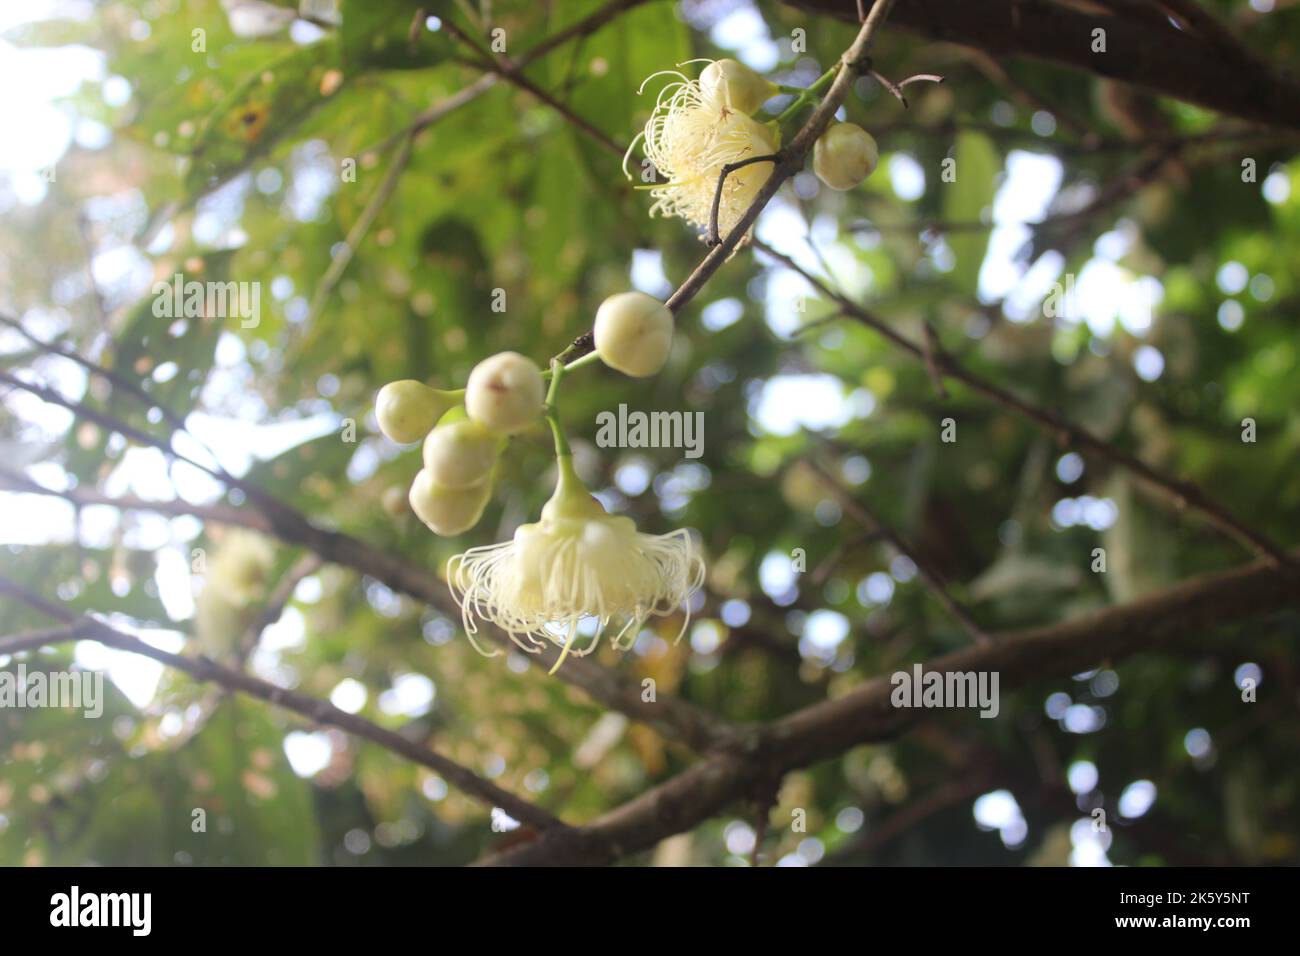 Nahaufnahme von Wasserguava mit verschwommenem Hintergrund im Garten. Gut für die Gesundheit, weil es viele Vitamine und Nährstoffe enthält. Stockfoto